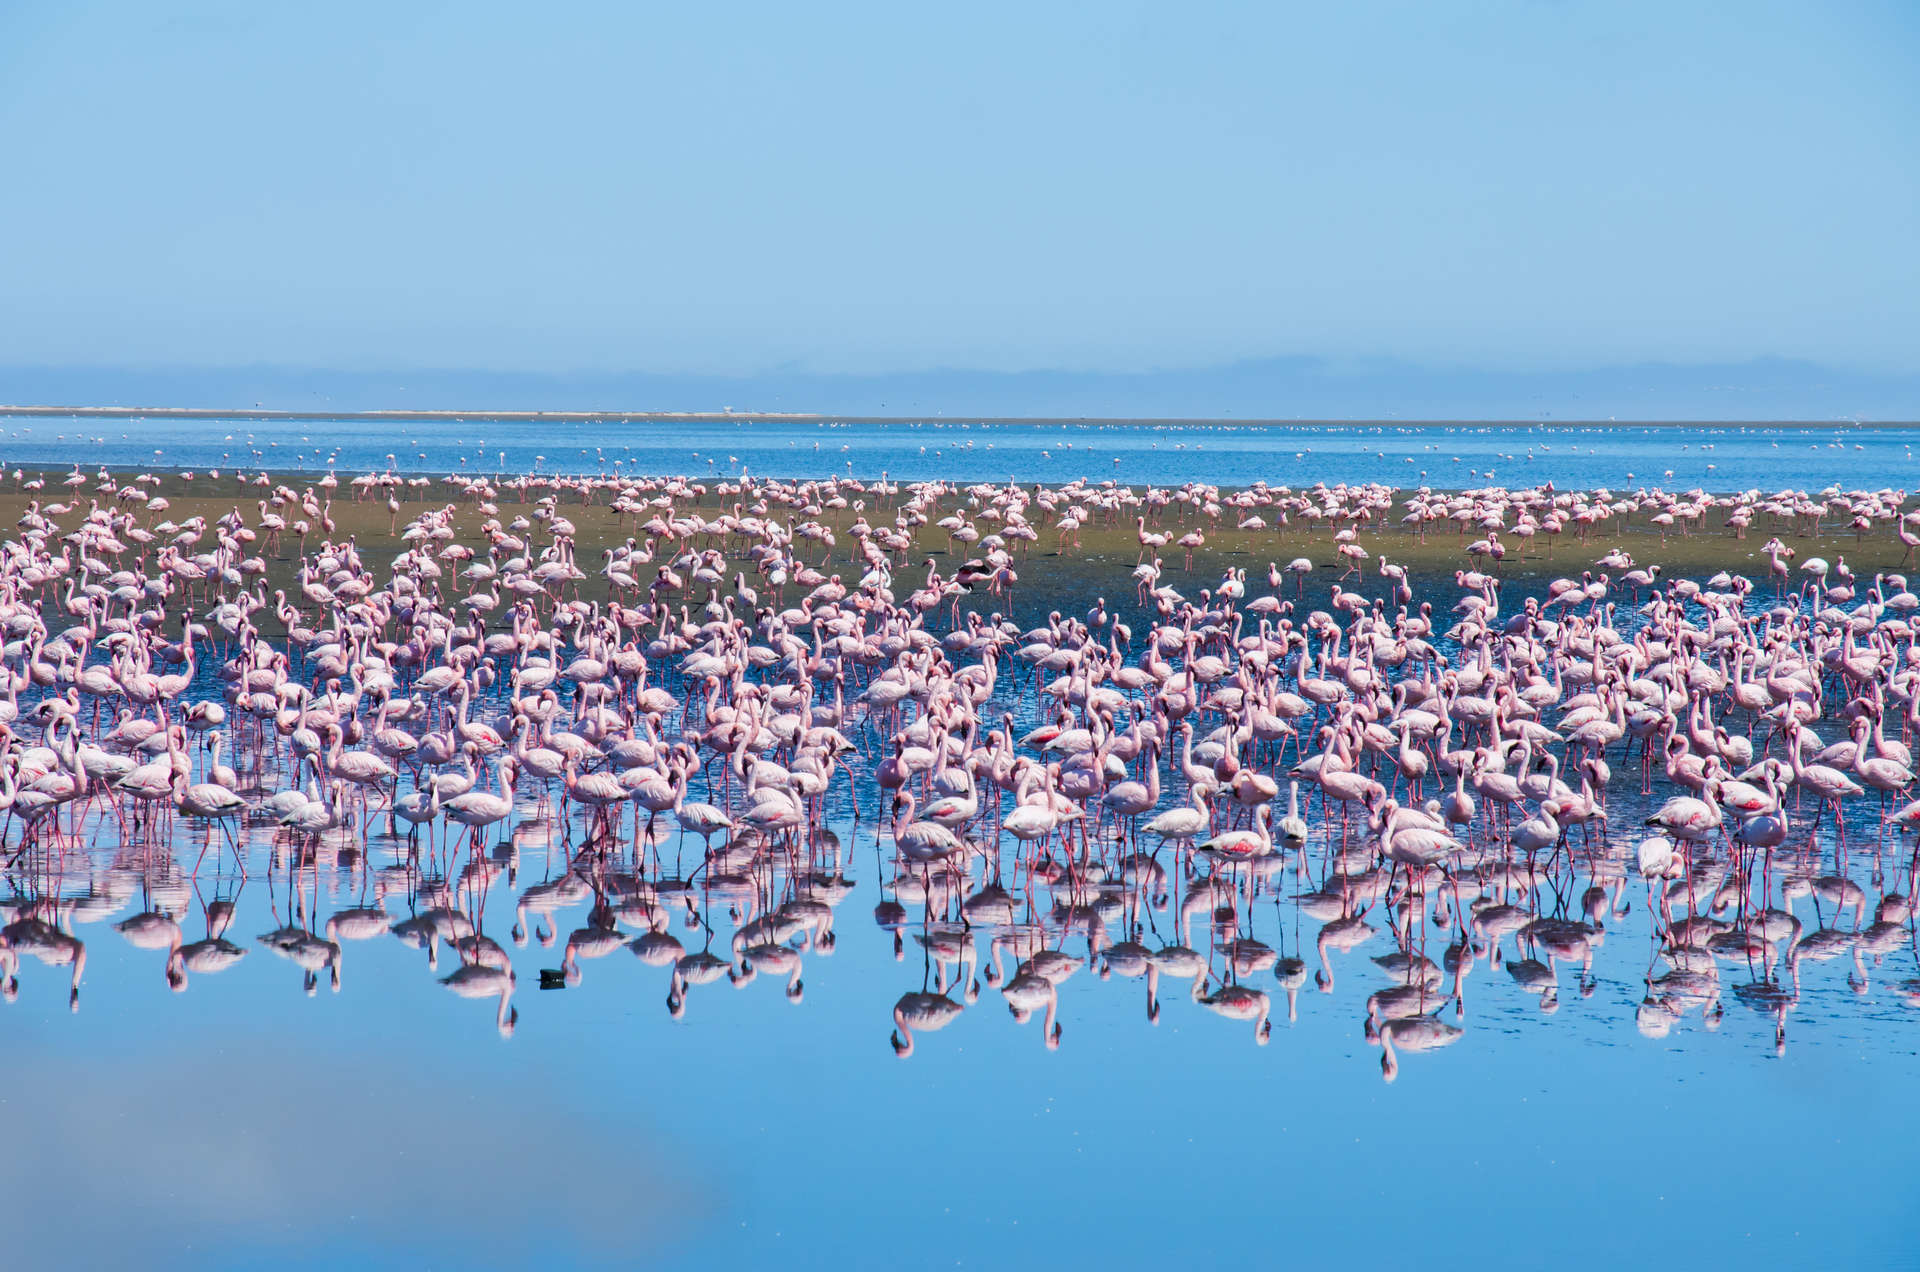 Pinkfarbene Flamingos tummeln sich im März in Namibia